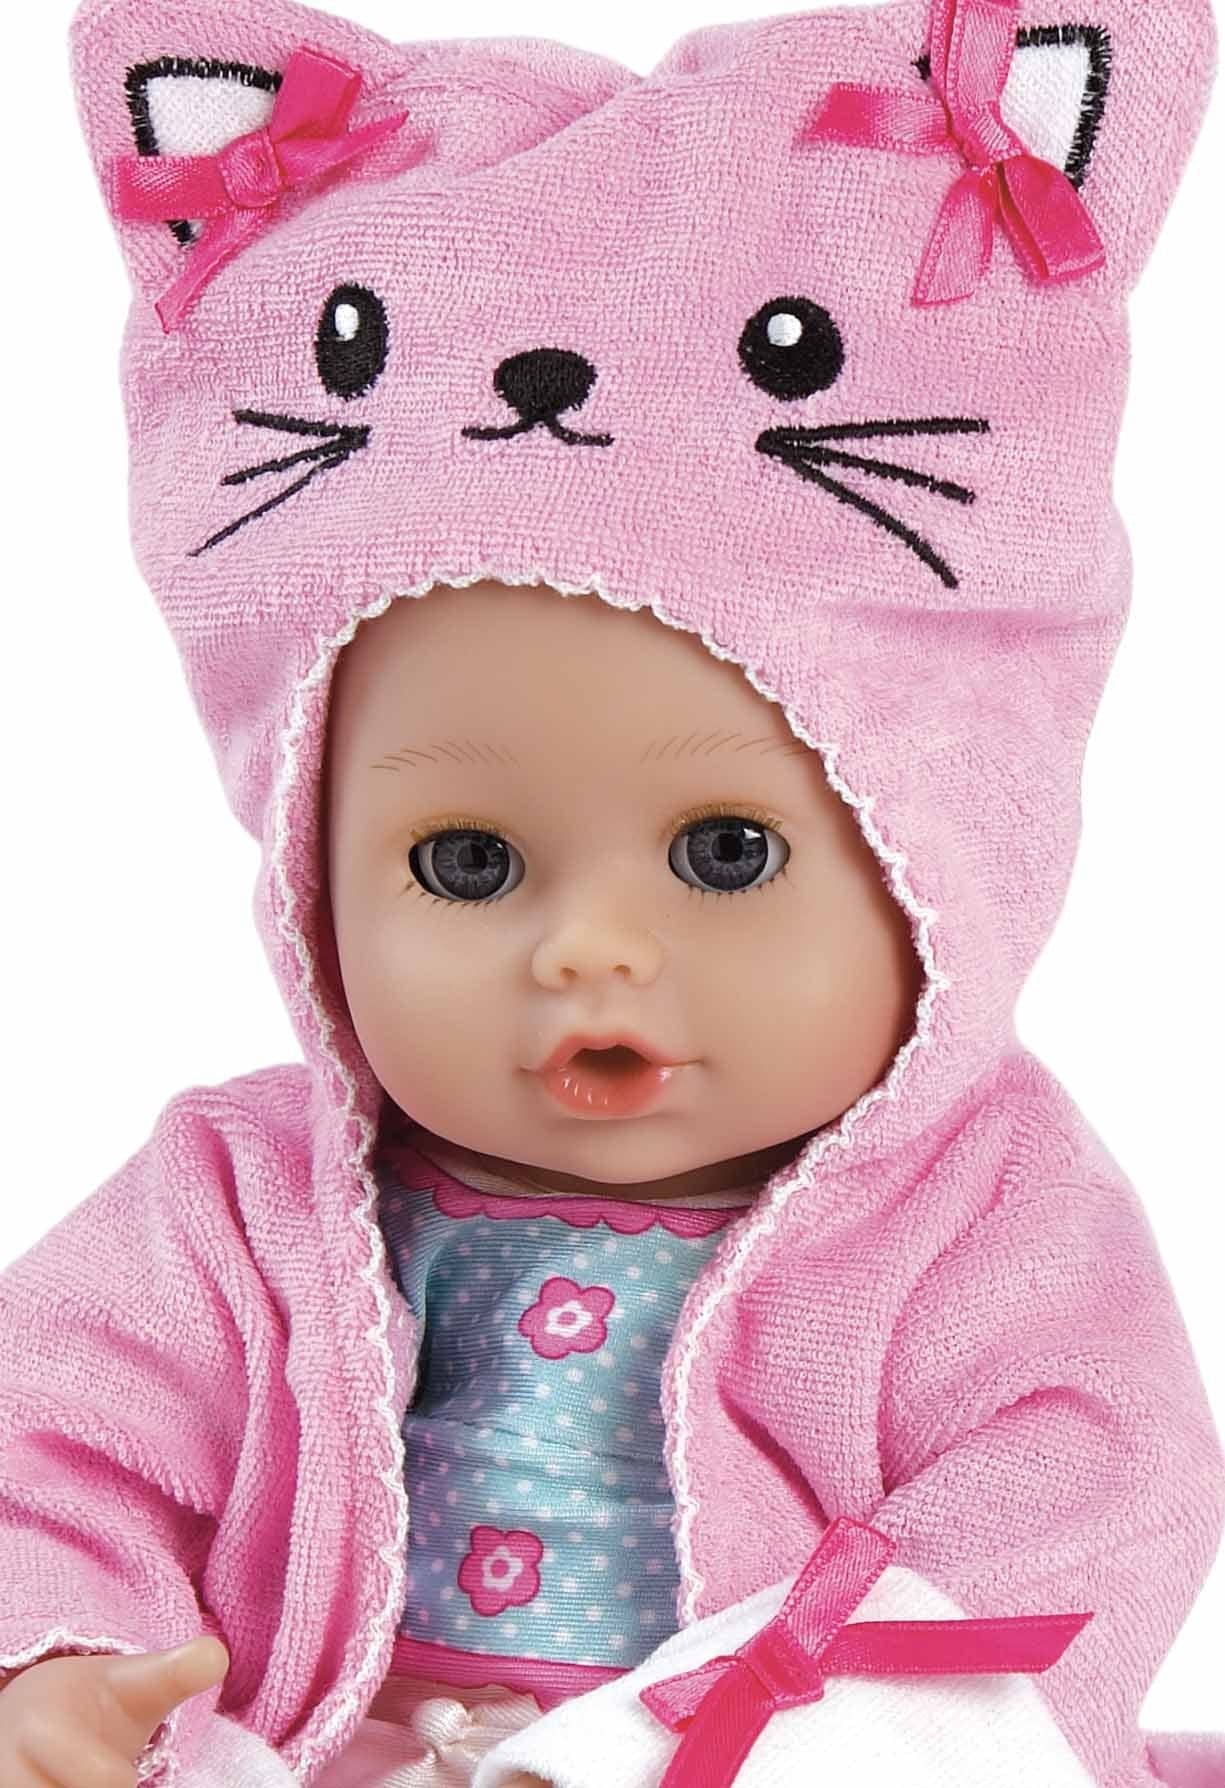 Adora Toys BathTime Baby - Kitty